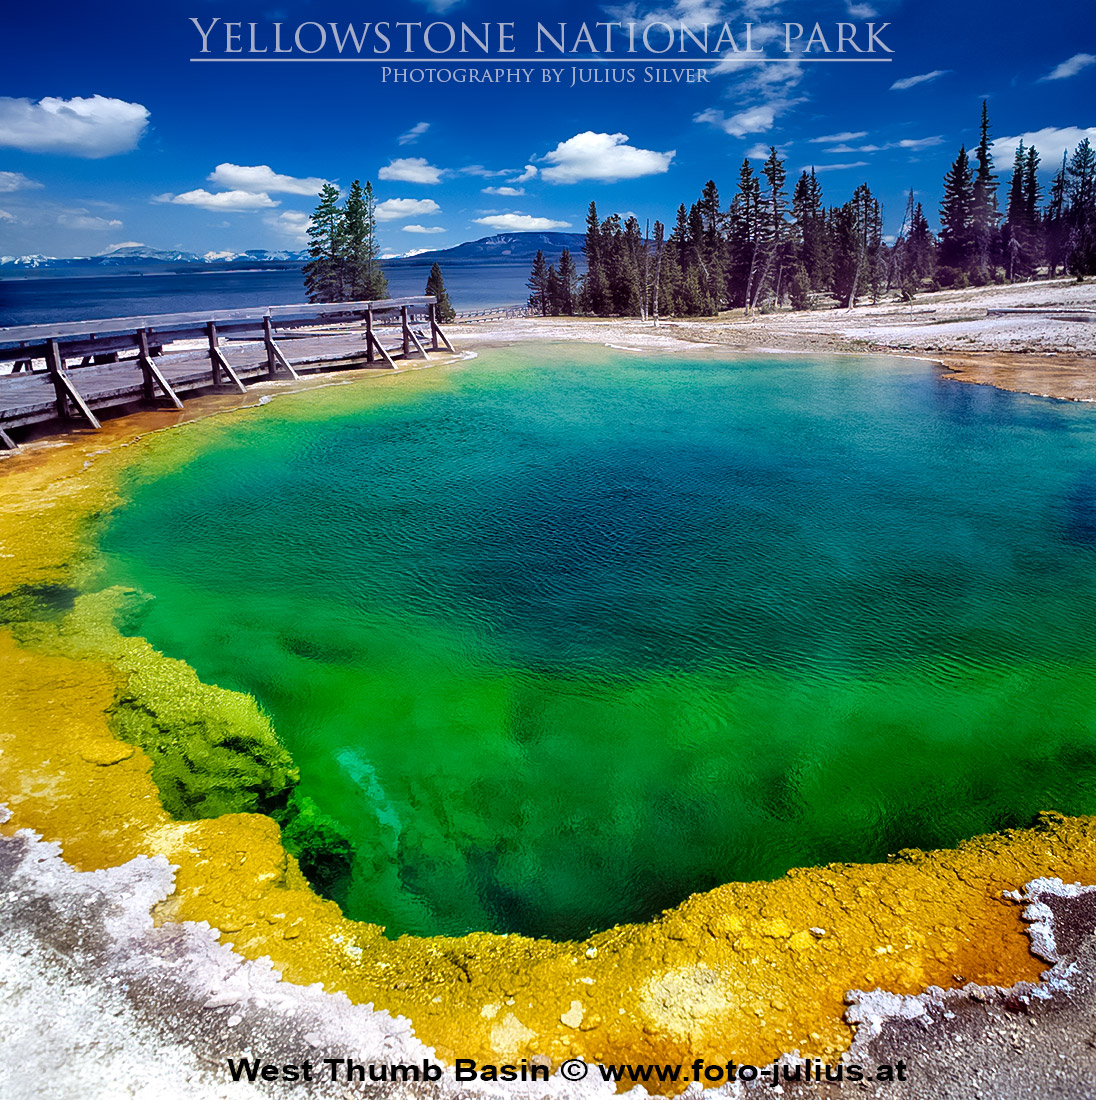 y137a_West_Thumb_Basin_Yellowstone.jpg, 558kB